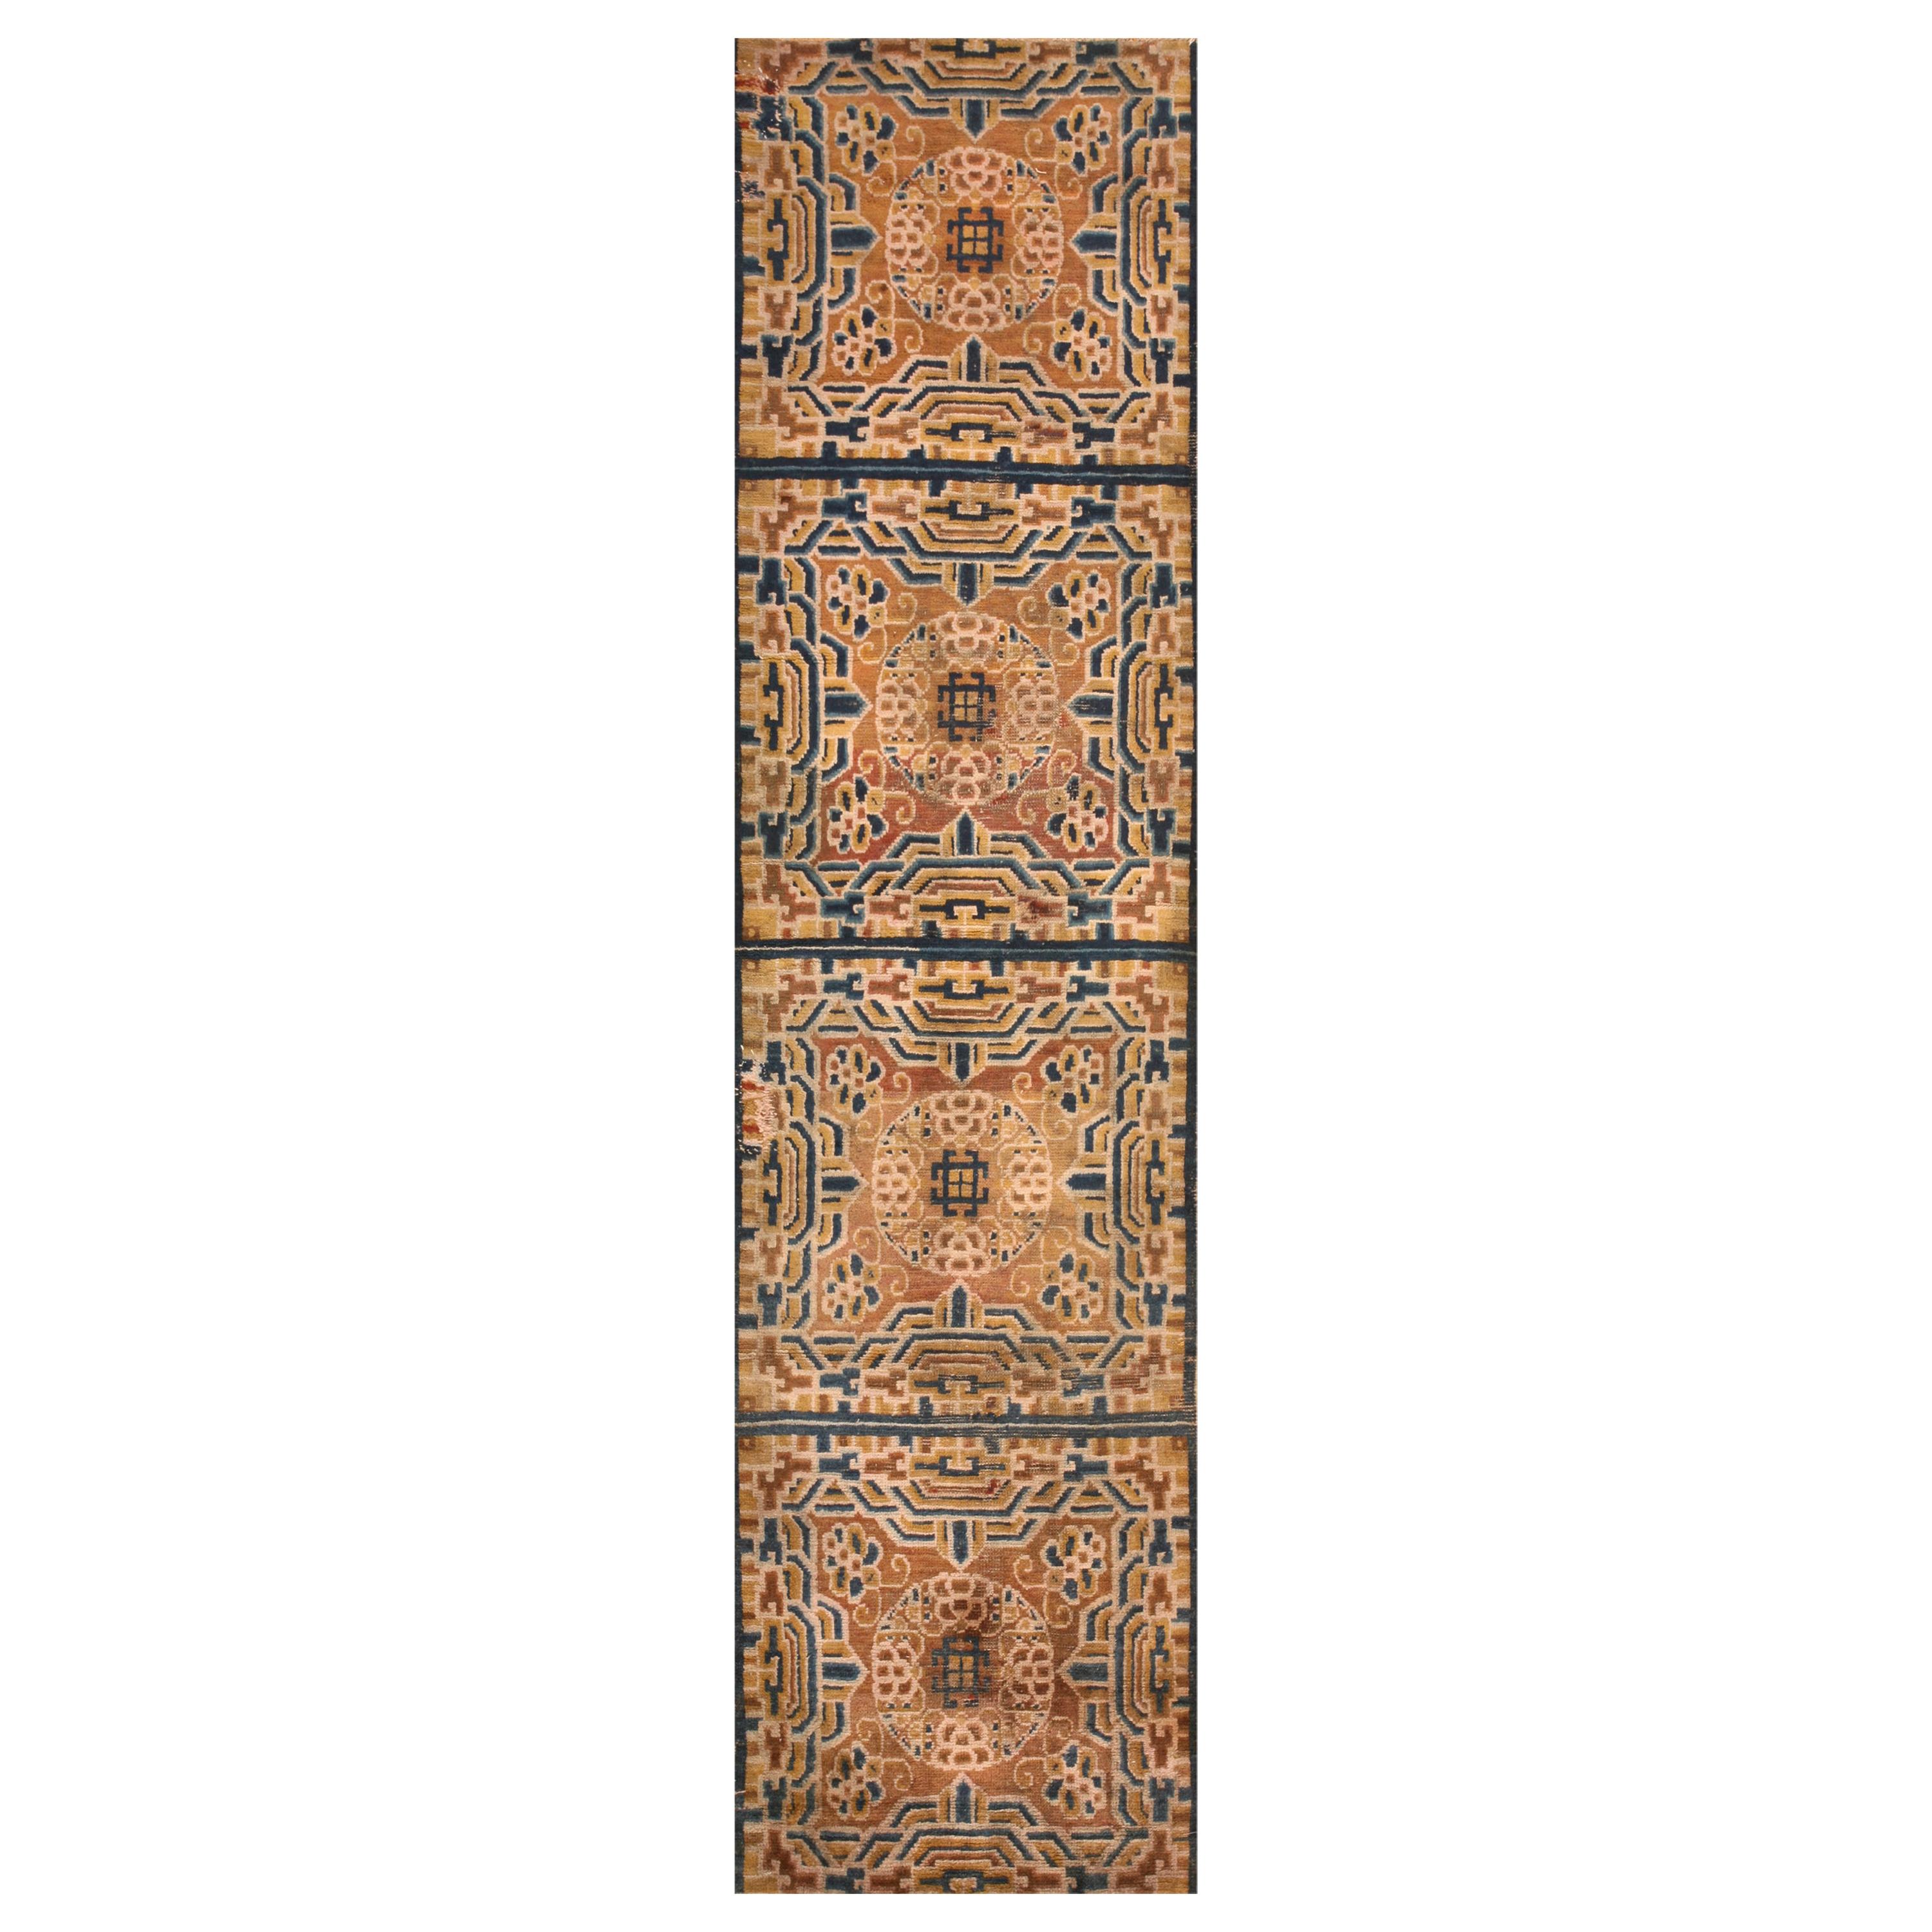 Chinesischer Ningxia-Teppich des späten 19. Jahrhunderts ( 2'4" x 9' - 72 x 275)